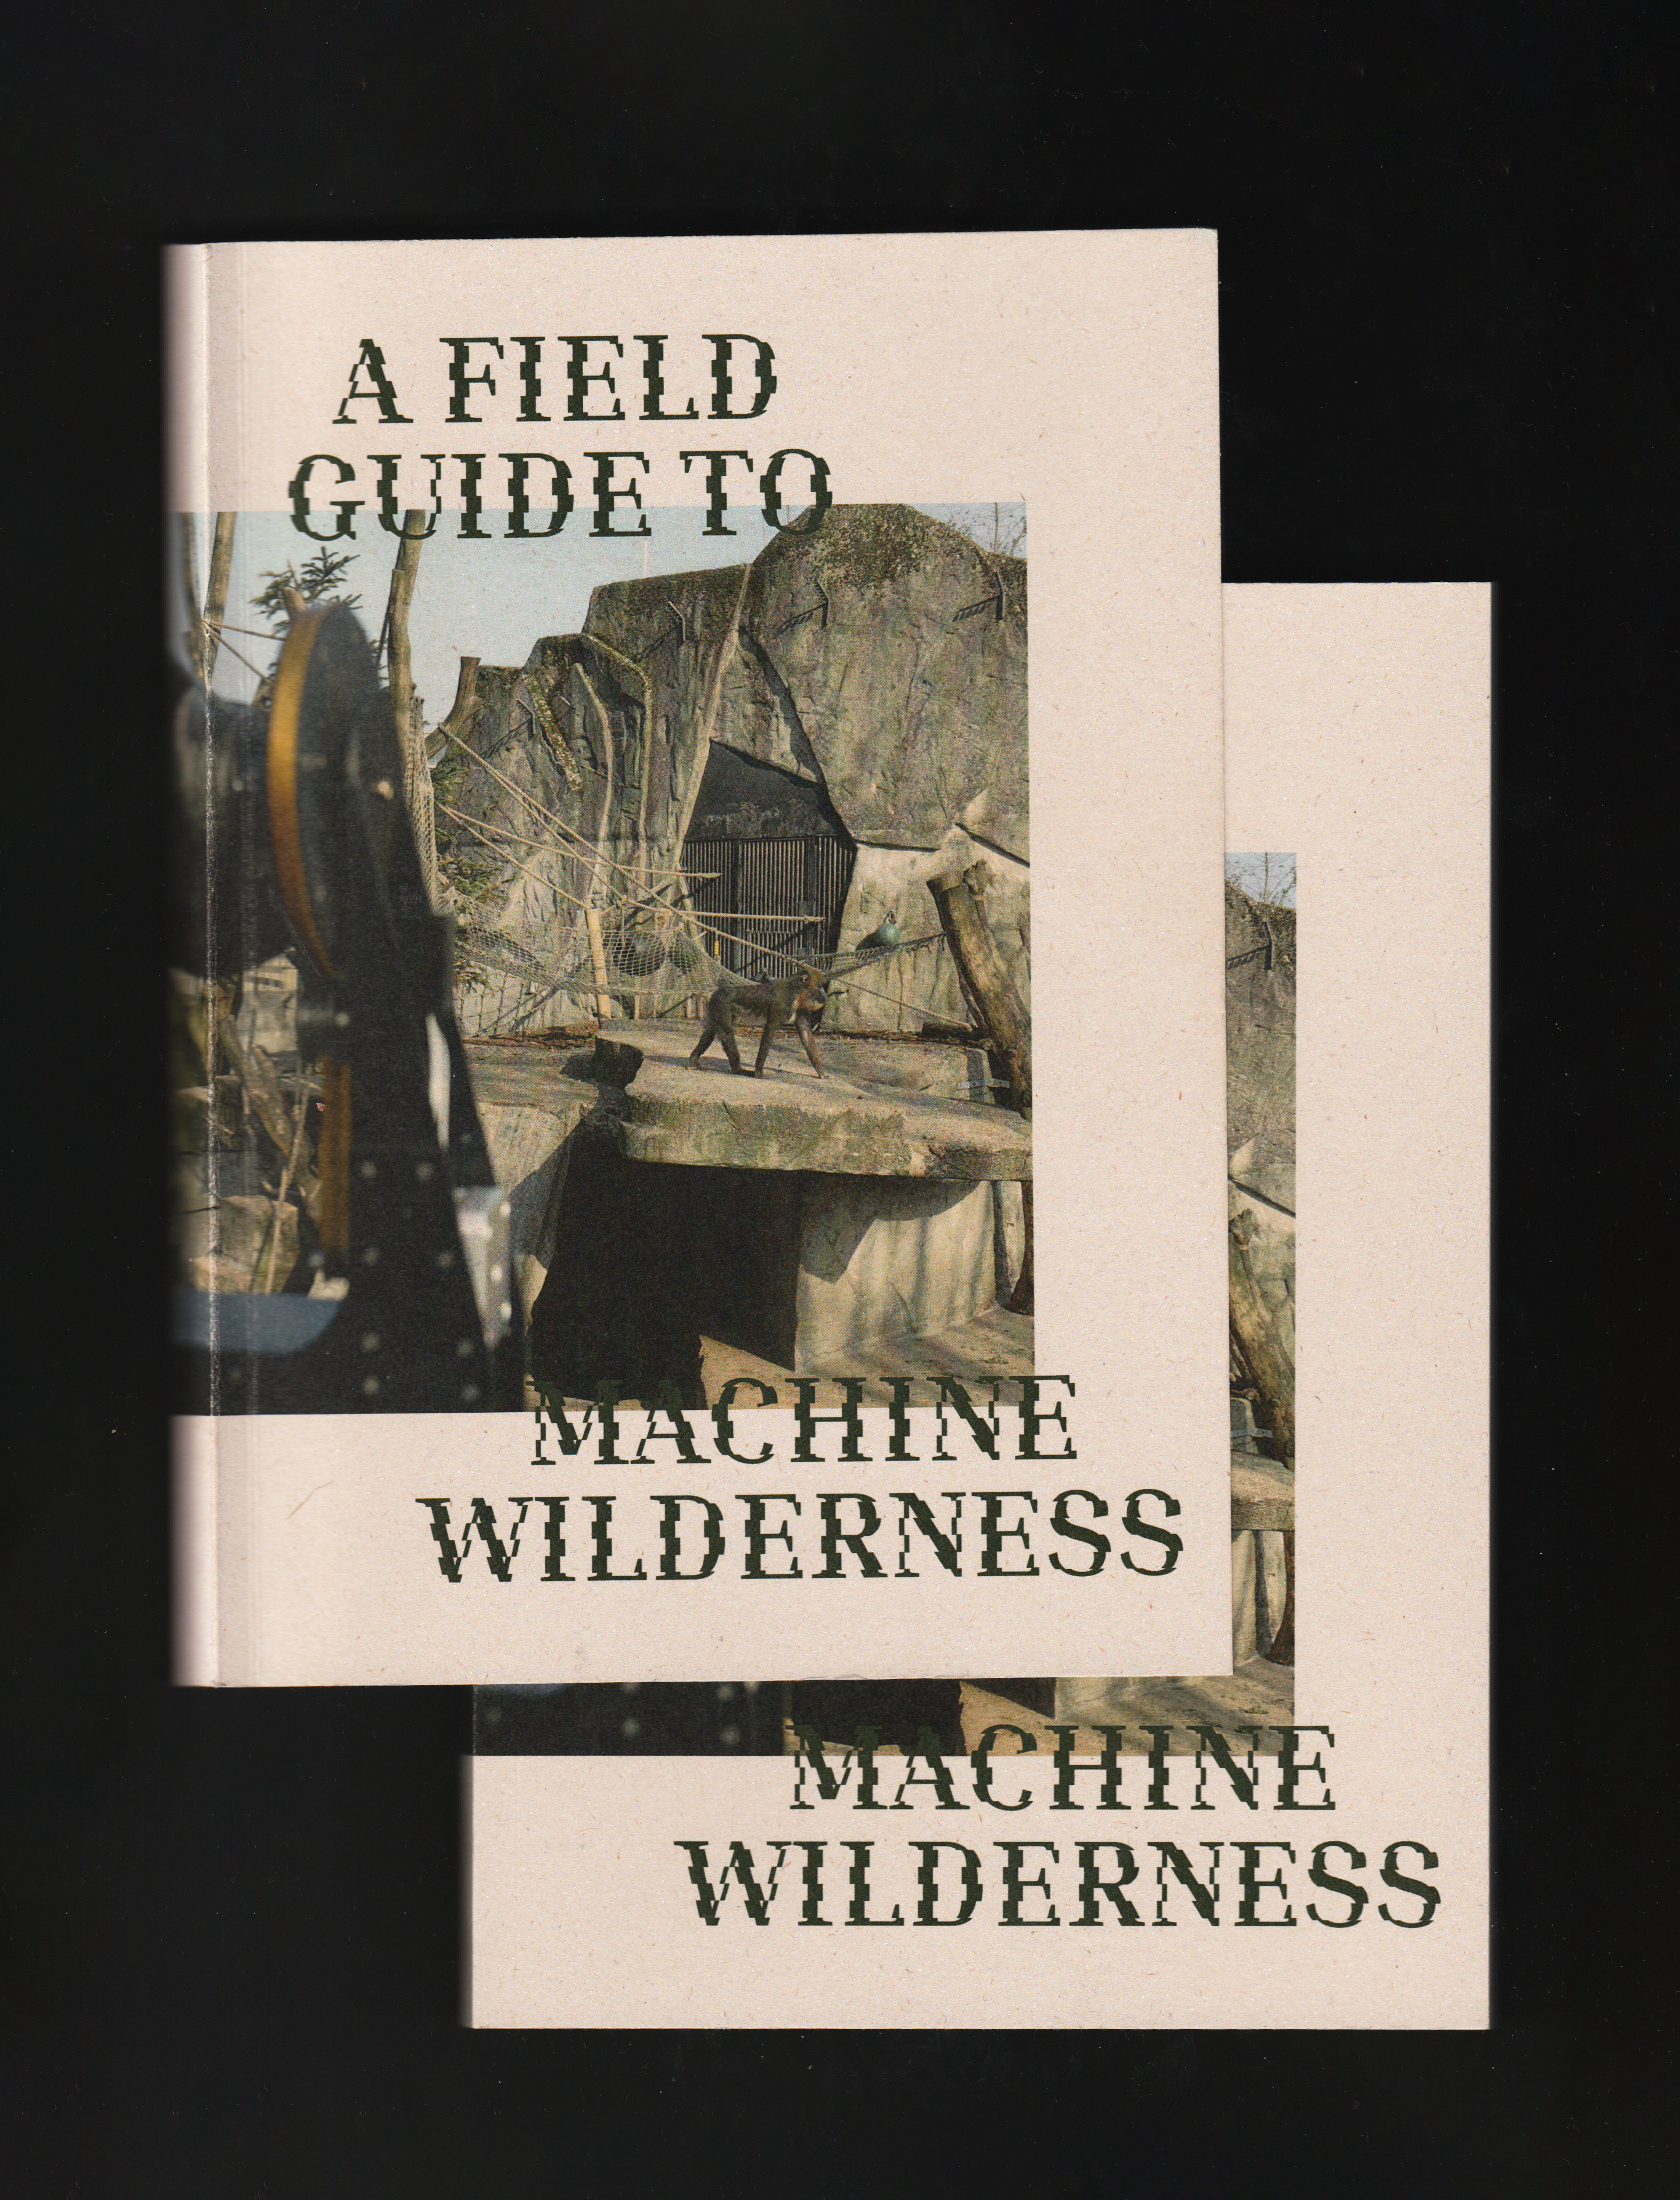 Machine Wilderness Publication